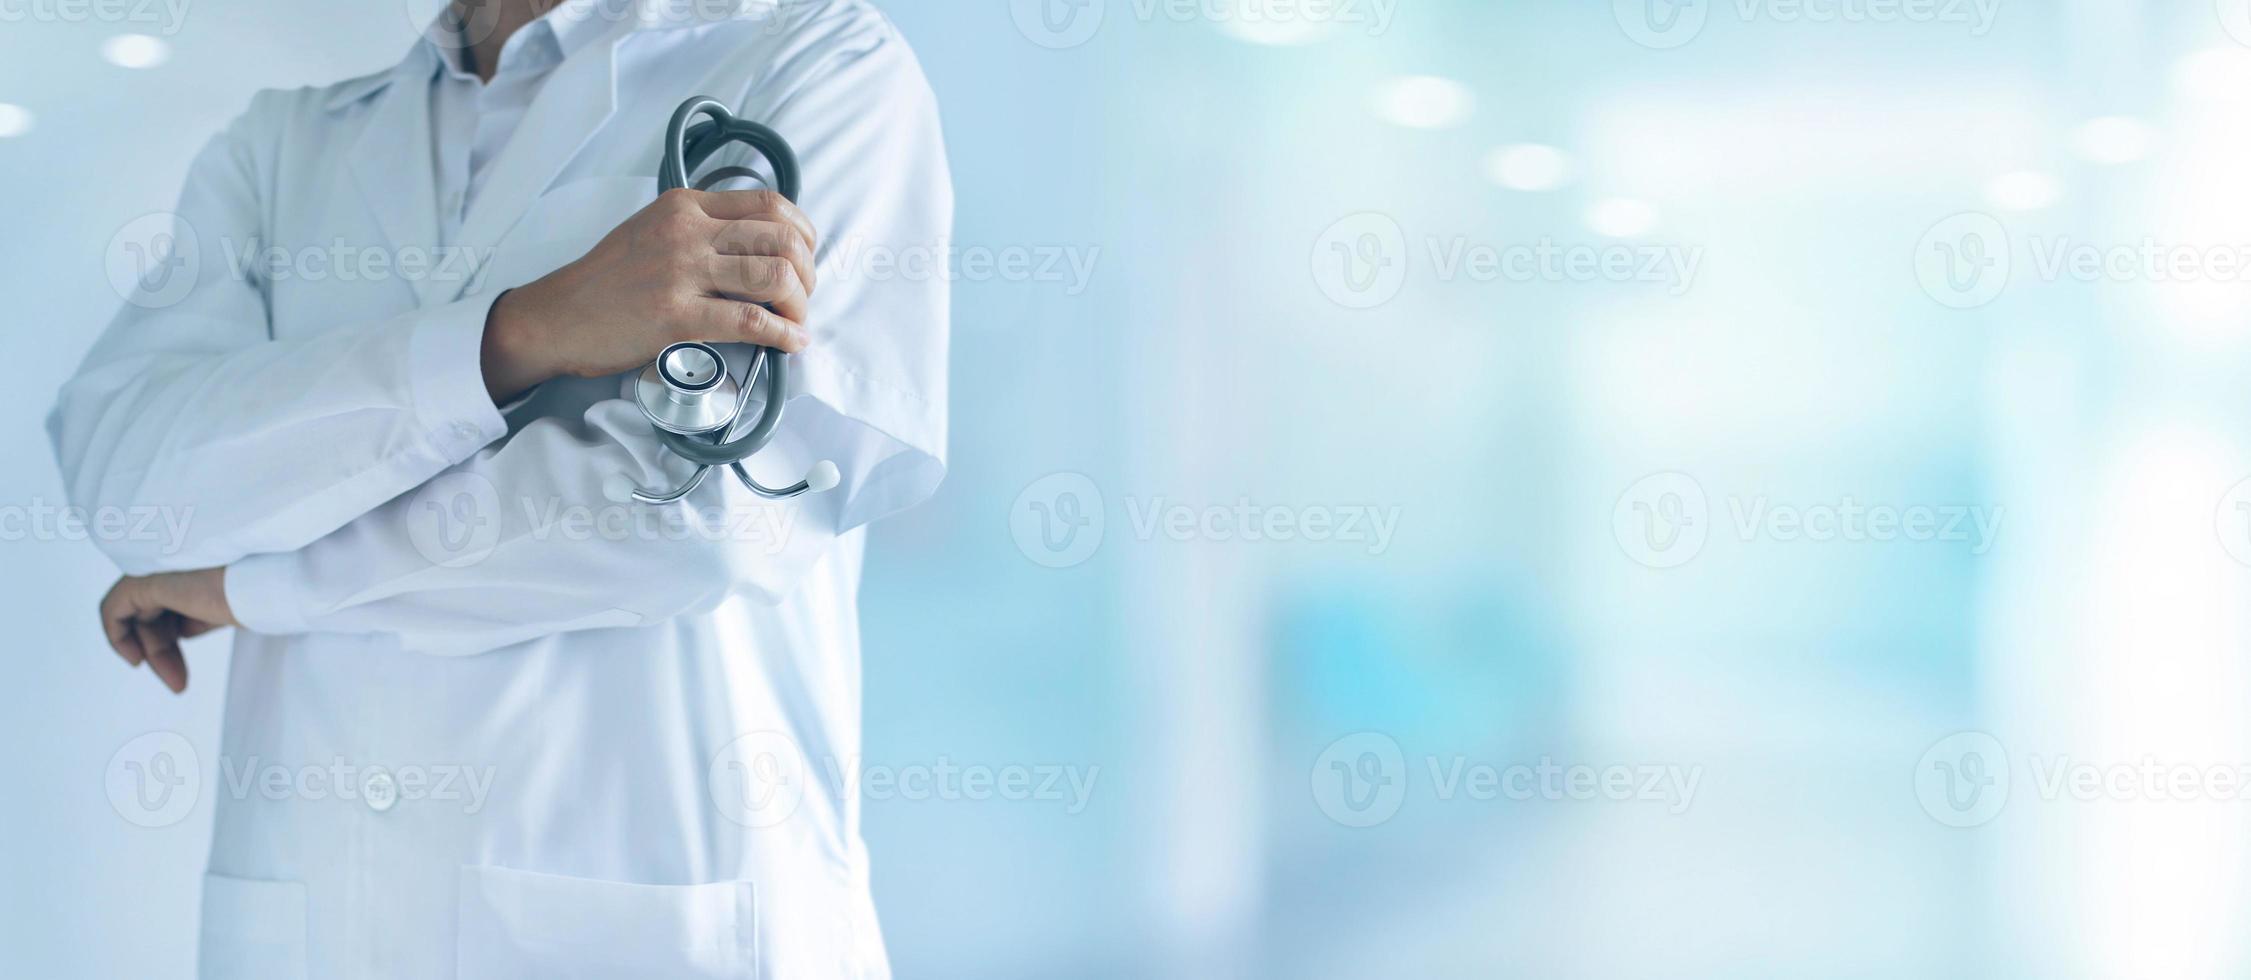 mannelijke arts met een stethoscoop in de hand die vol vertrouwen op de achtergrond van het ziekenhuis staat foto